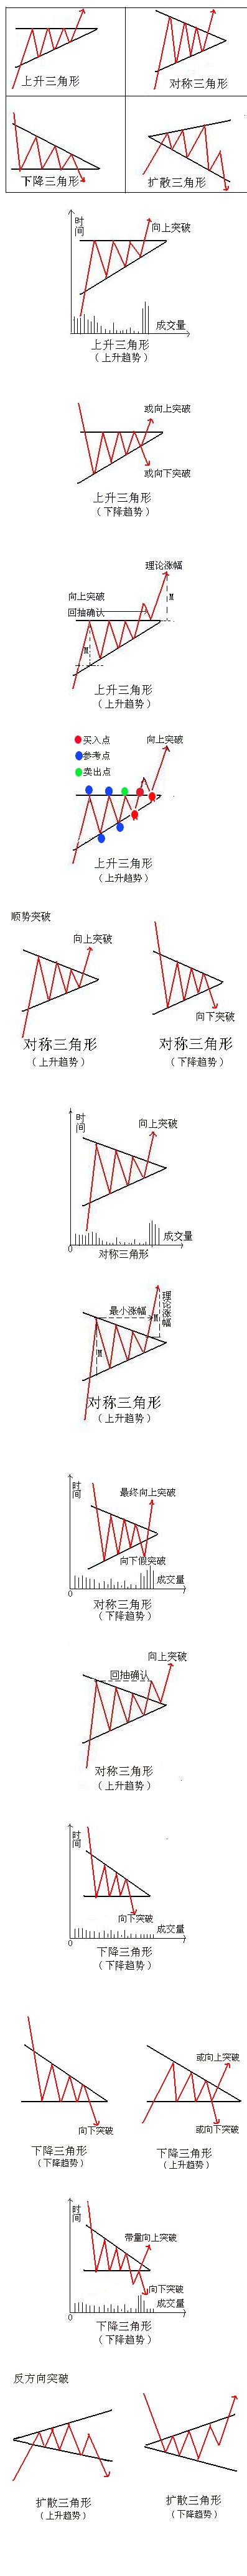 三角形是股市图表中比较常见的一种形态